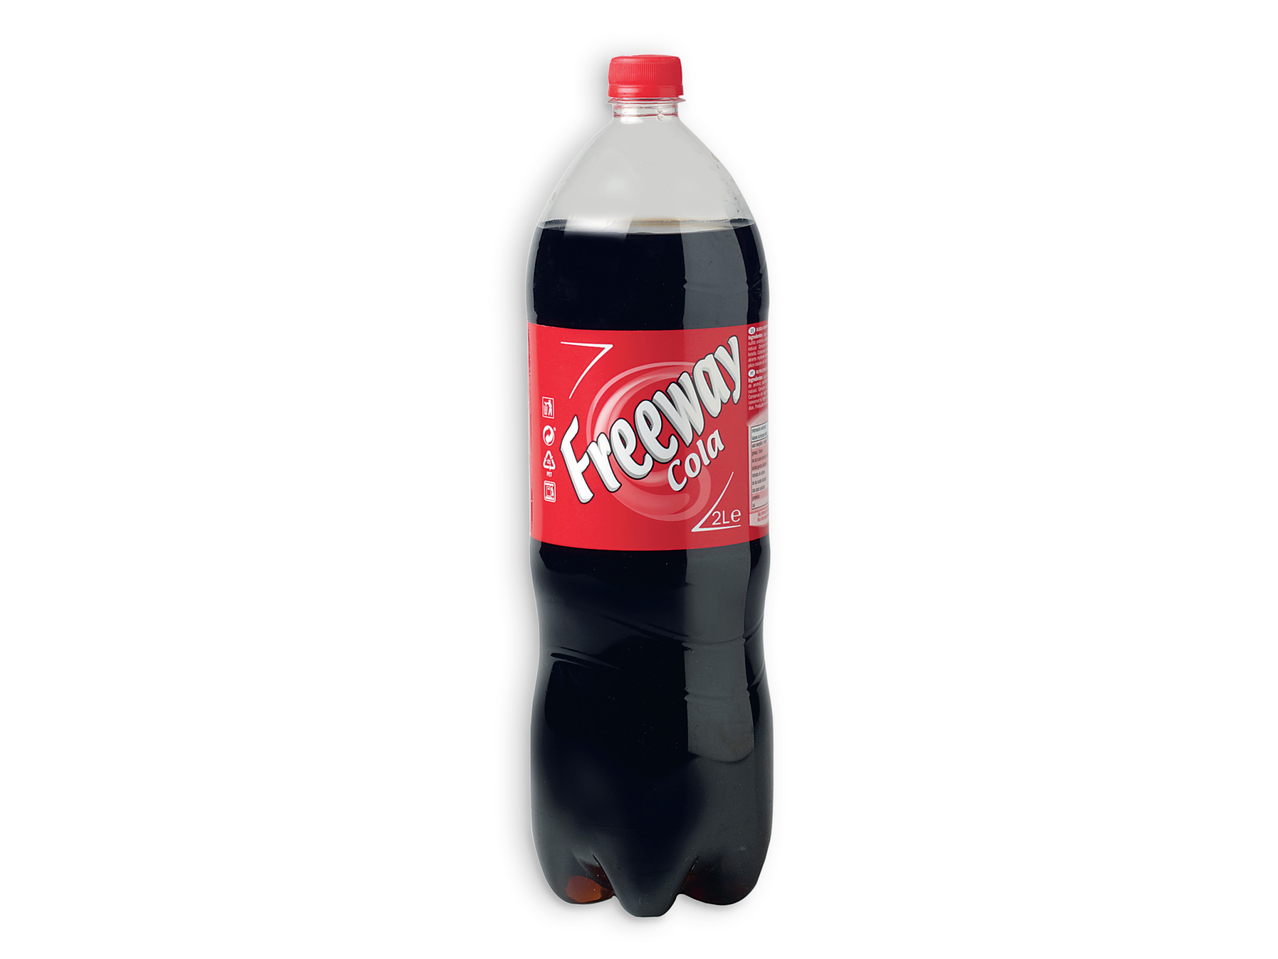 FREEWAY(R) Cola